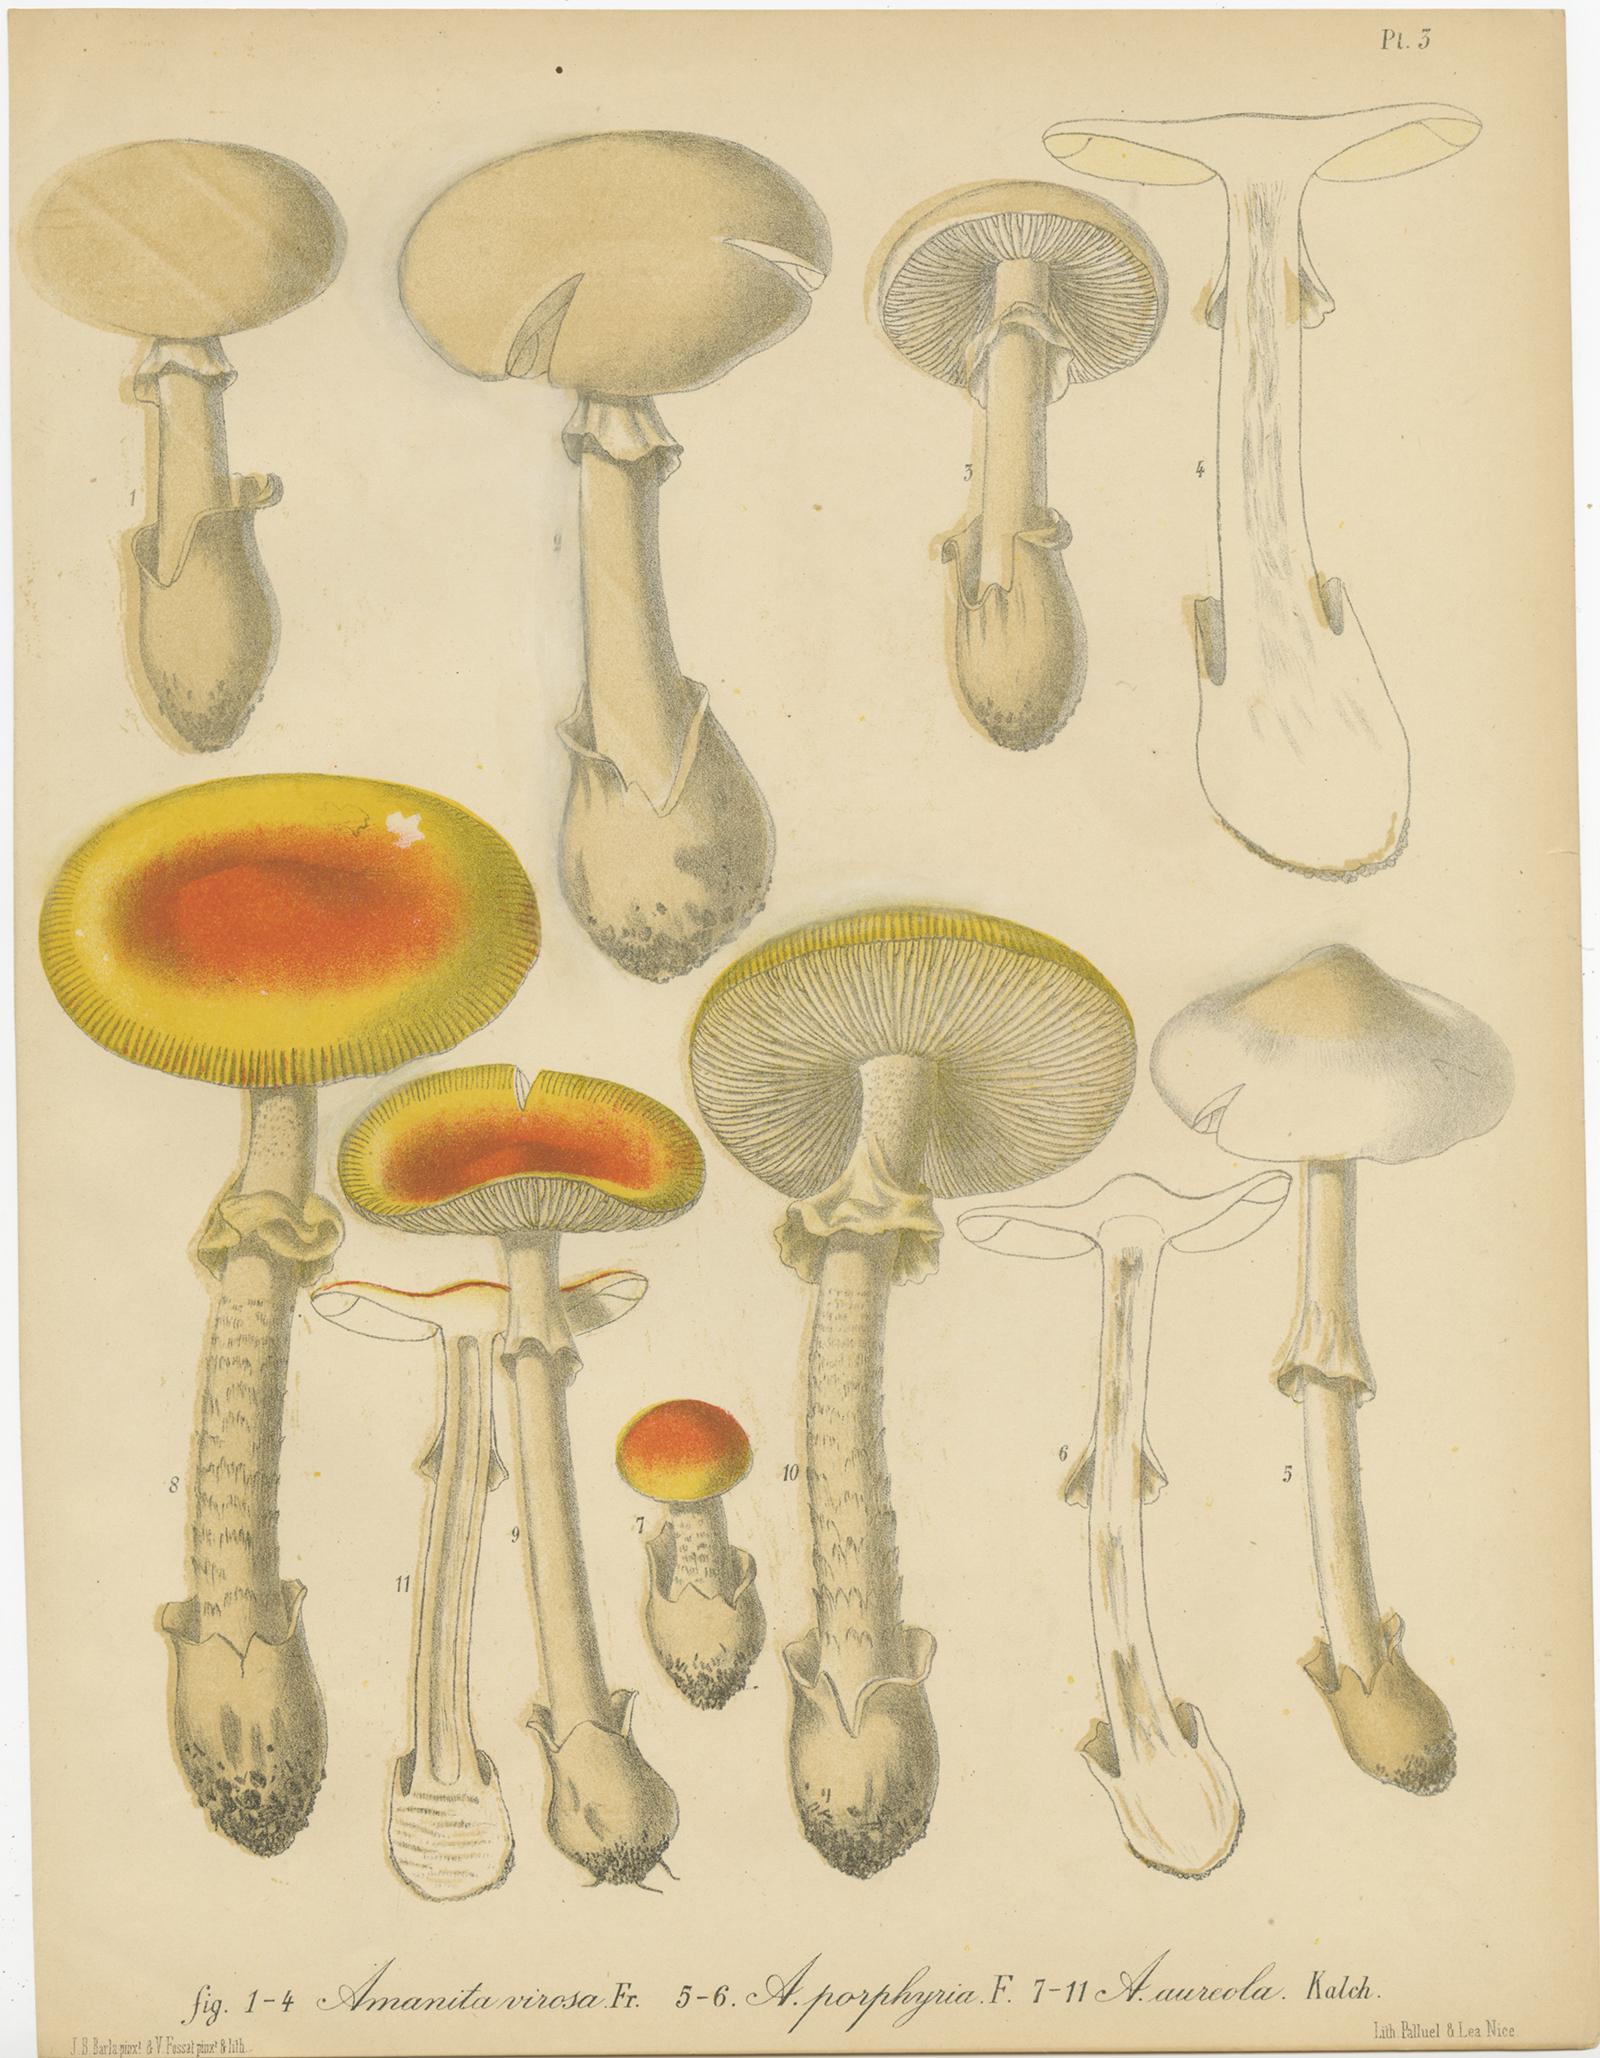 Set of eight antique mycology prints depicting various fungi / mushrooms. These prints originate from 'Flore mycologique illustrée: les champignons des Alpes-Maritimes' by J.B. Barla.